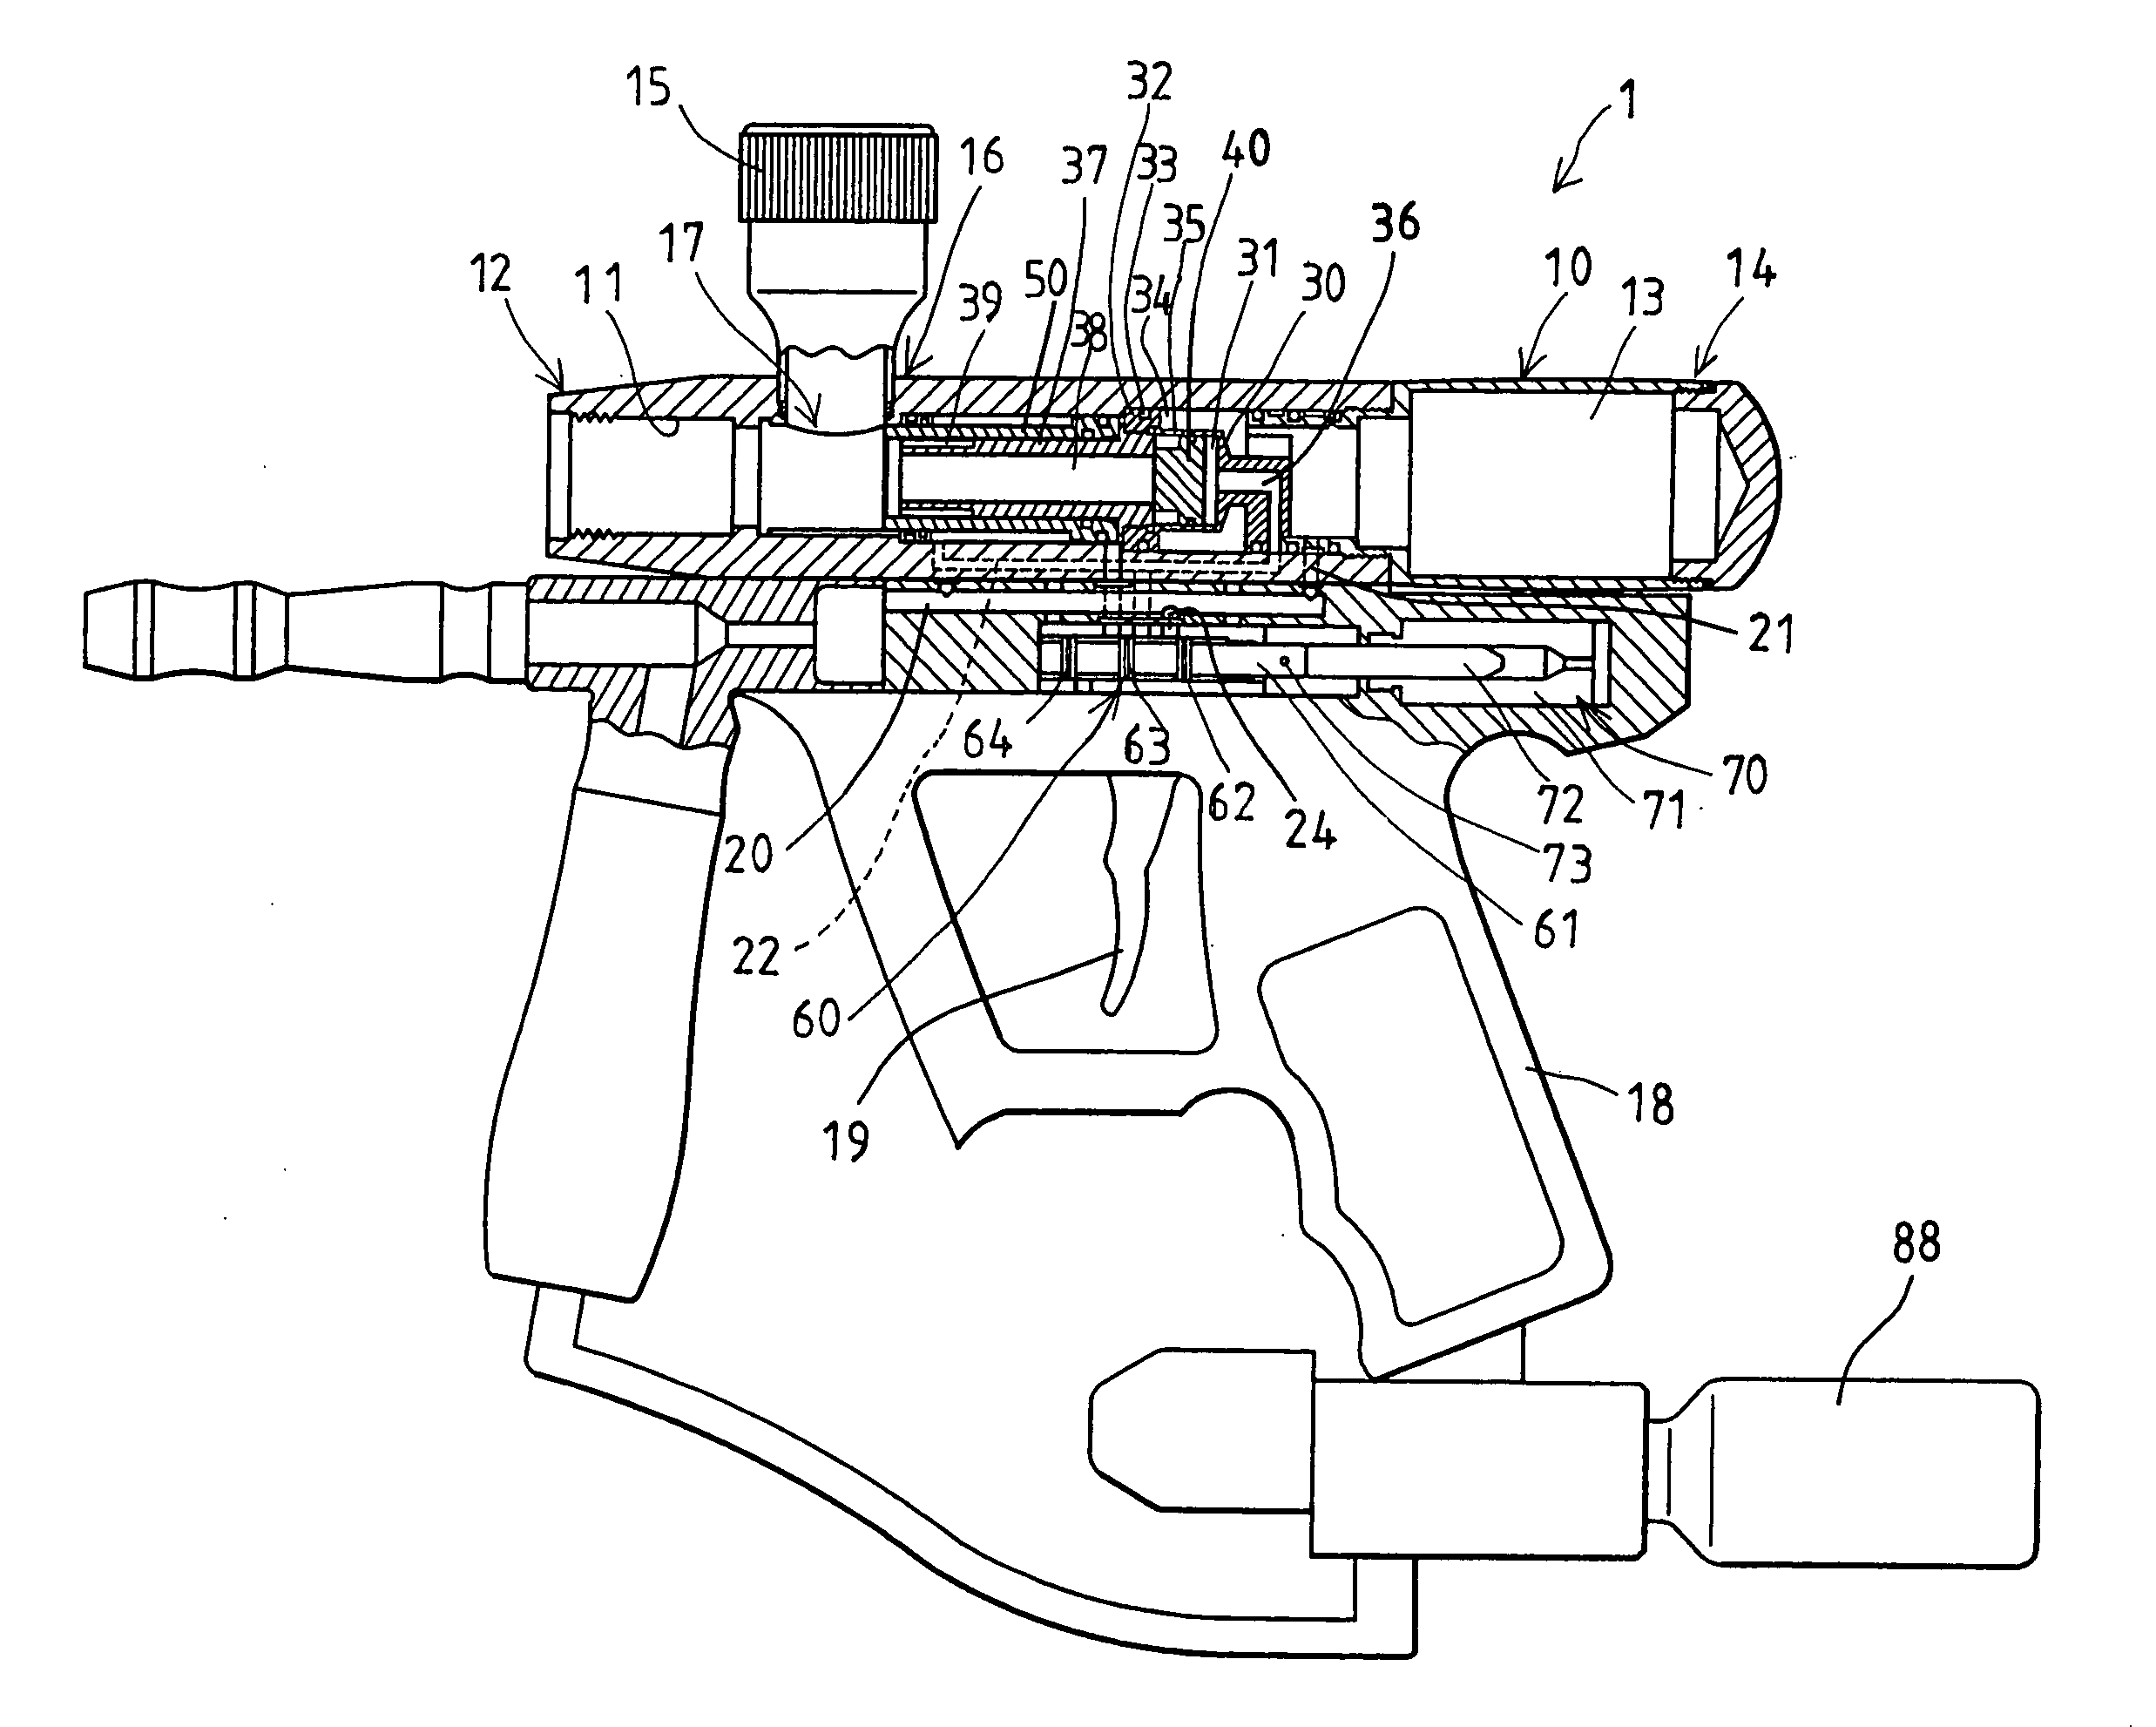 Pneumatic paintball gun